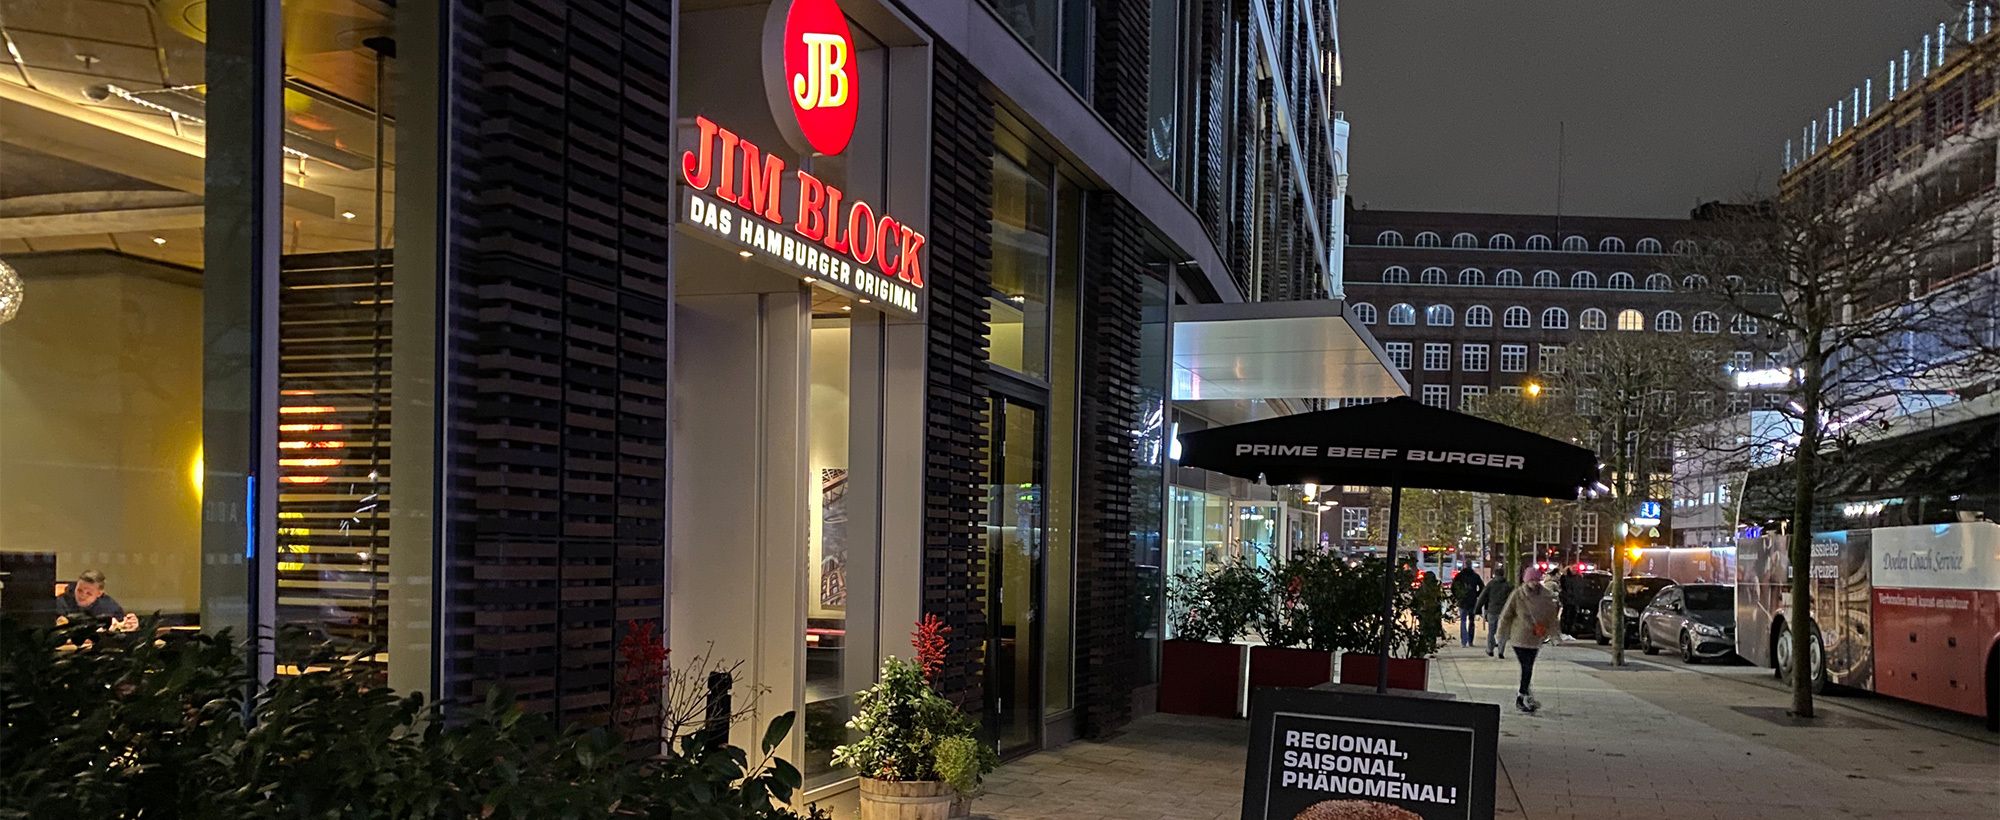 Außenanicht des Jim Block Restaurants in Hamburg am Dammtor bei Nacht